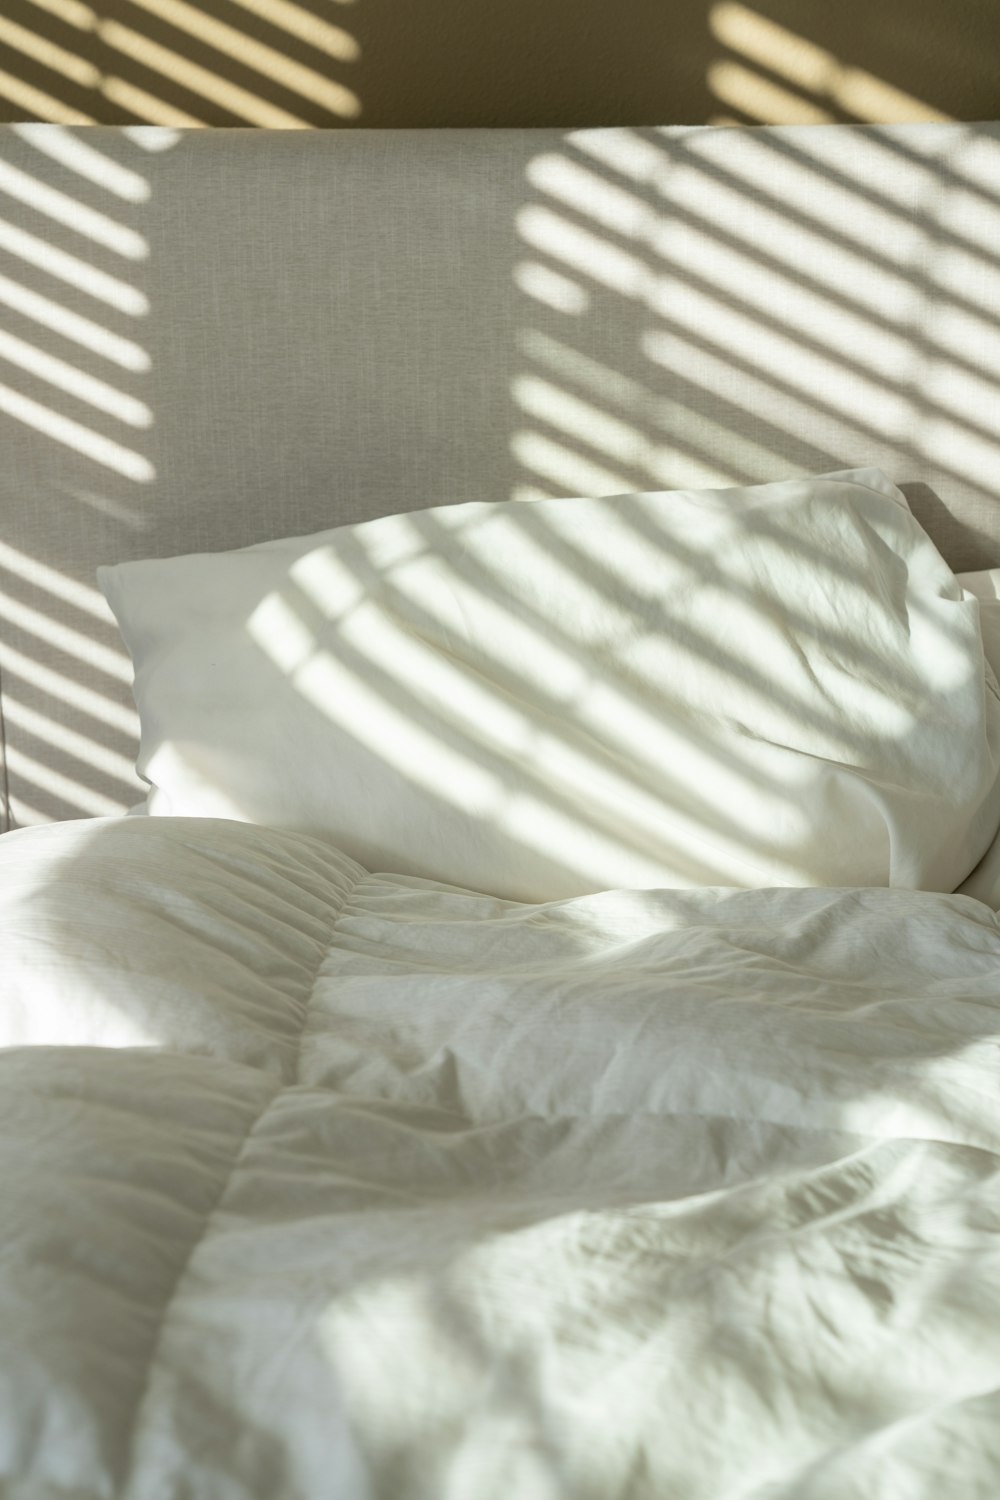 흰색 시트와 흰색 베개가 있는 침대